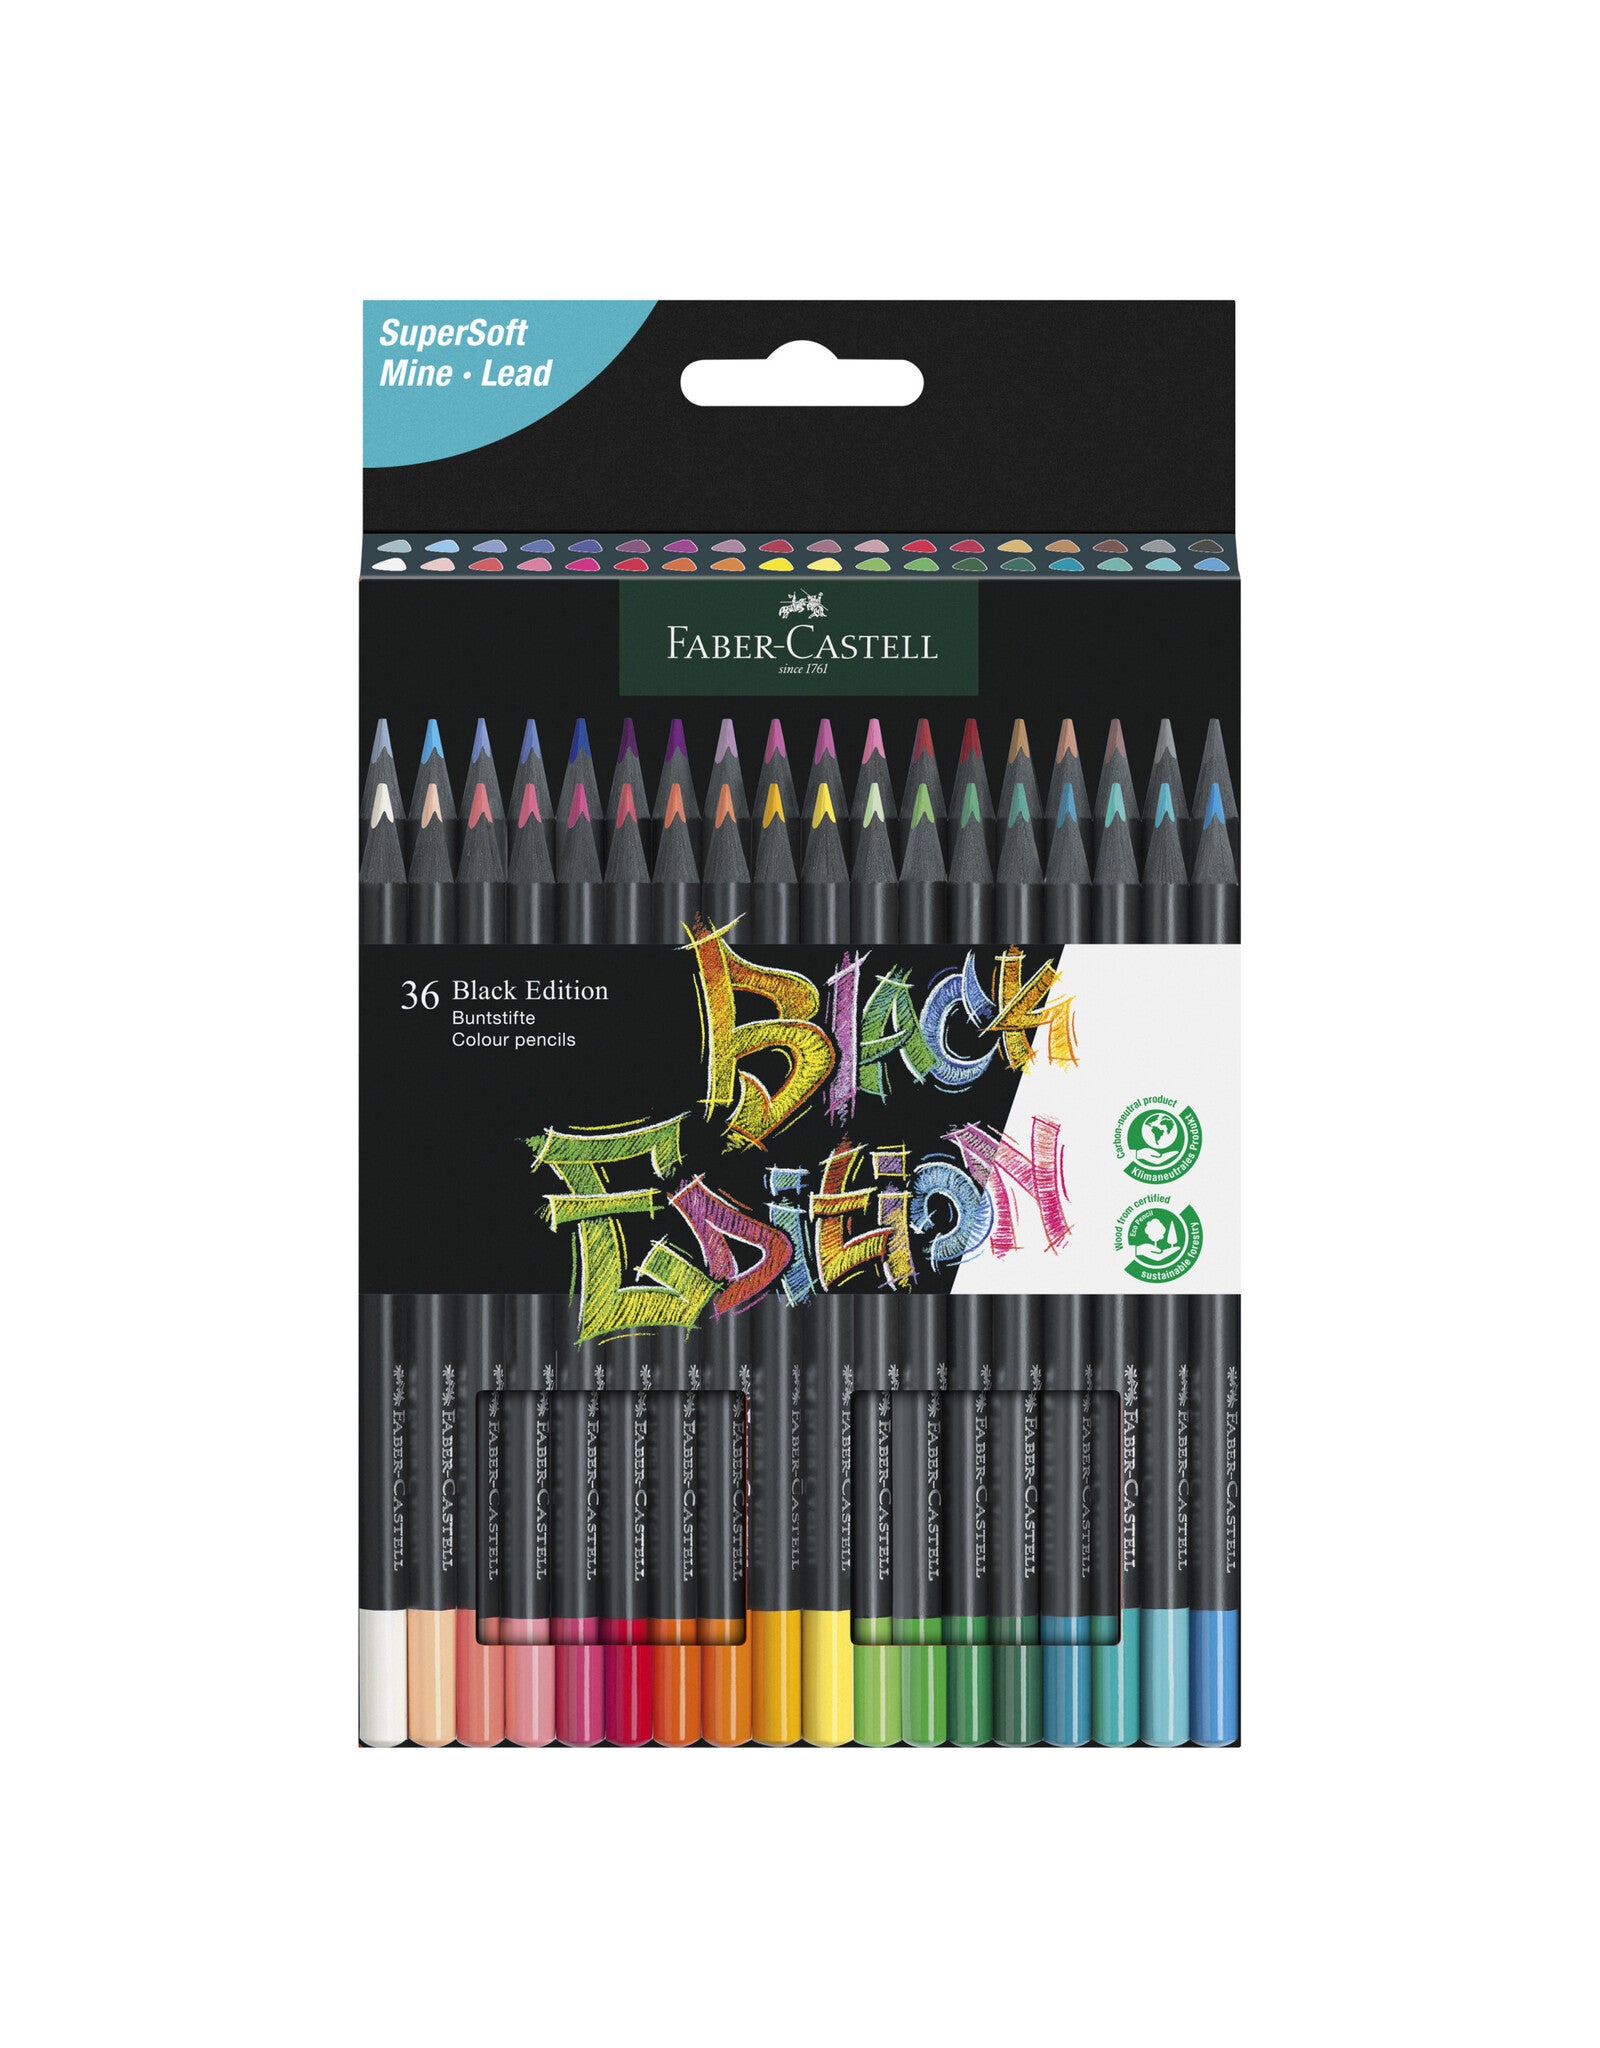 Faber Castell Black Edition Colour Pencils Set of 24